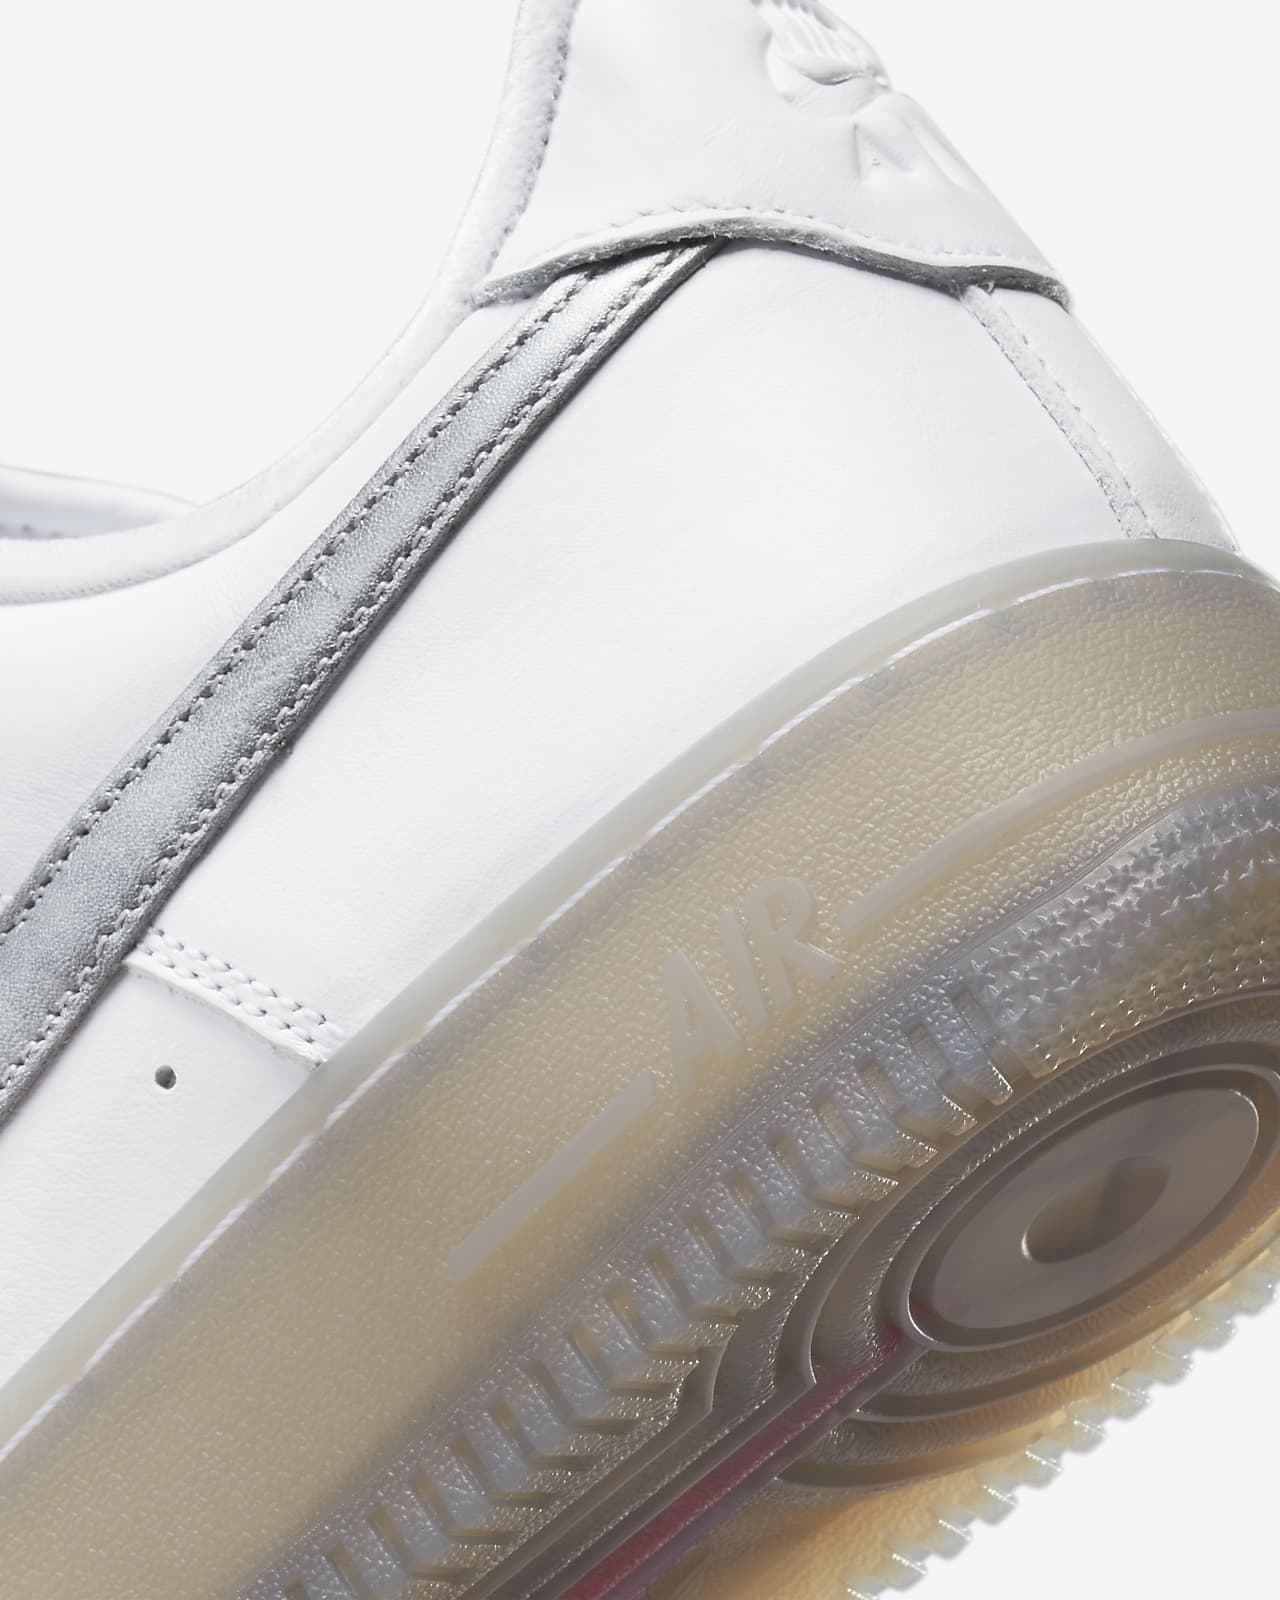 Nike Air Force 1 '07 Premium Sneaker